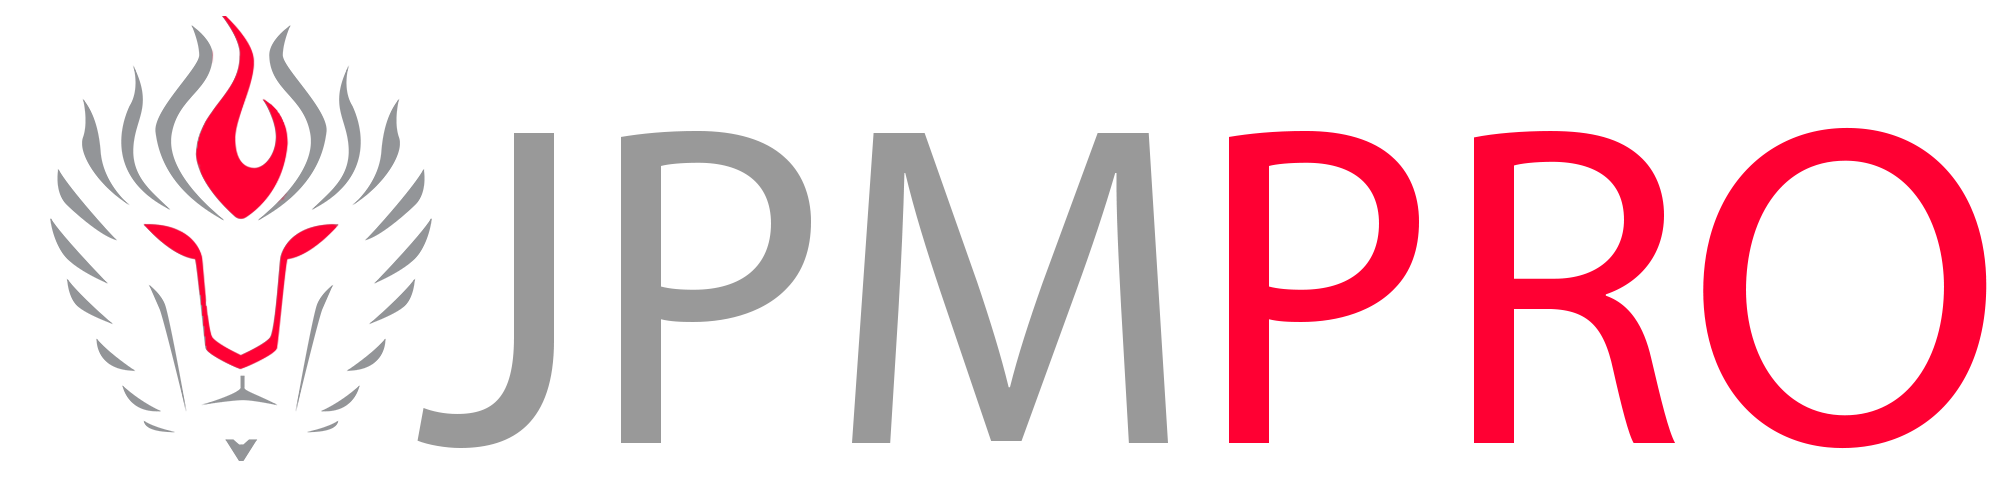 JPM PRO Sales